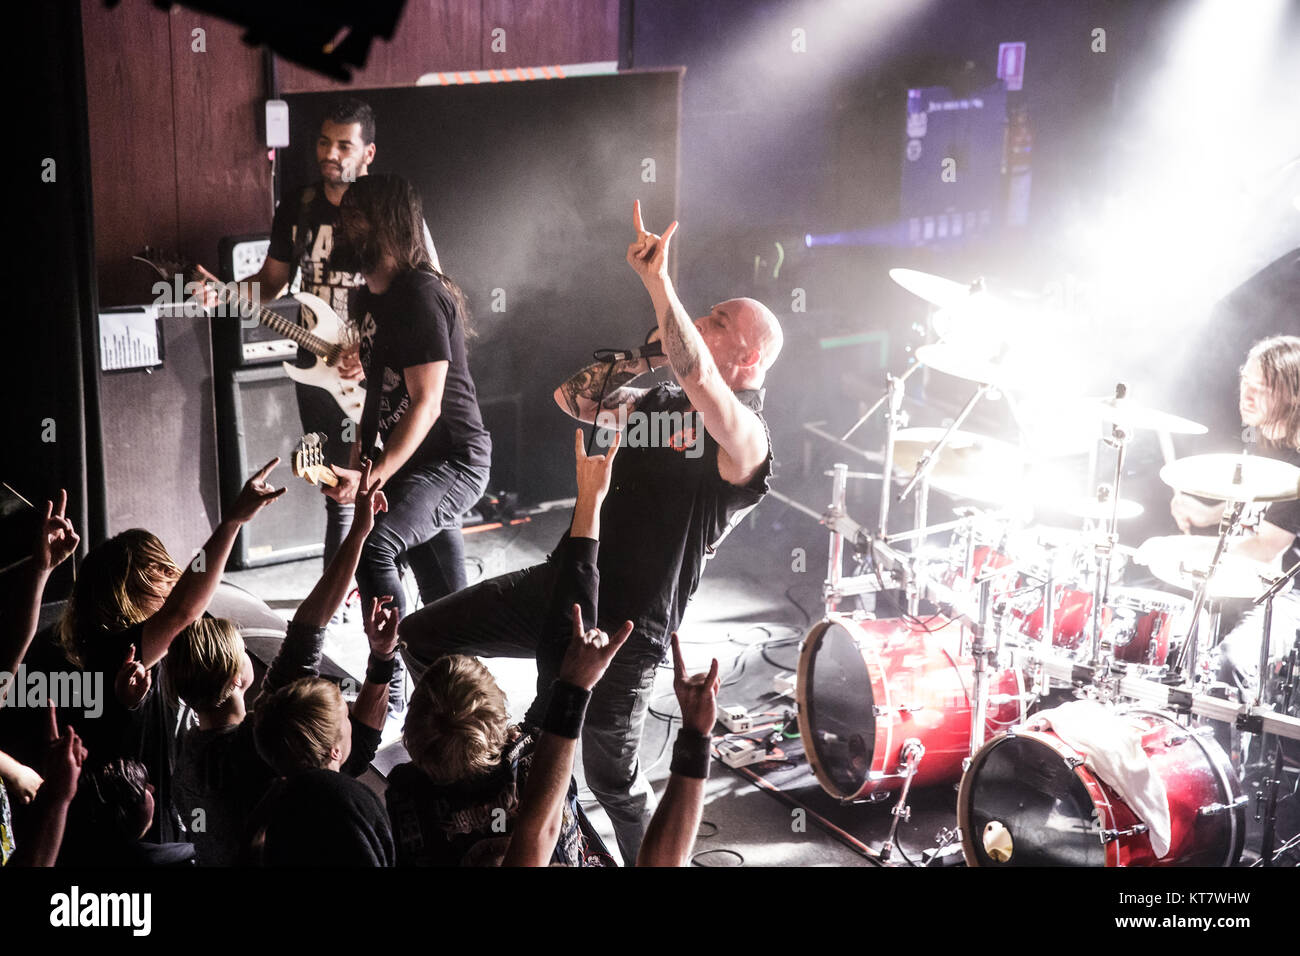 Le groupe de death metal belge Aborted effectue un concert live à Vega à Copenhague. Ici le chanteur Sven de Caluwe est vu sur scène avec le reste de la bande. Le Danemark, 11/01 2016. Banque D'Images